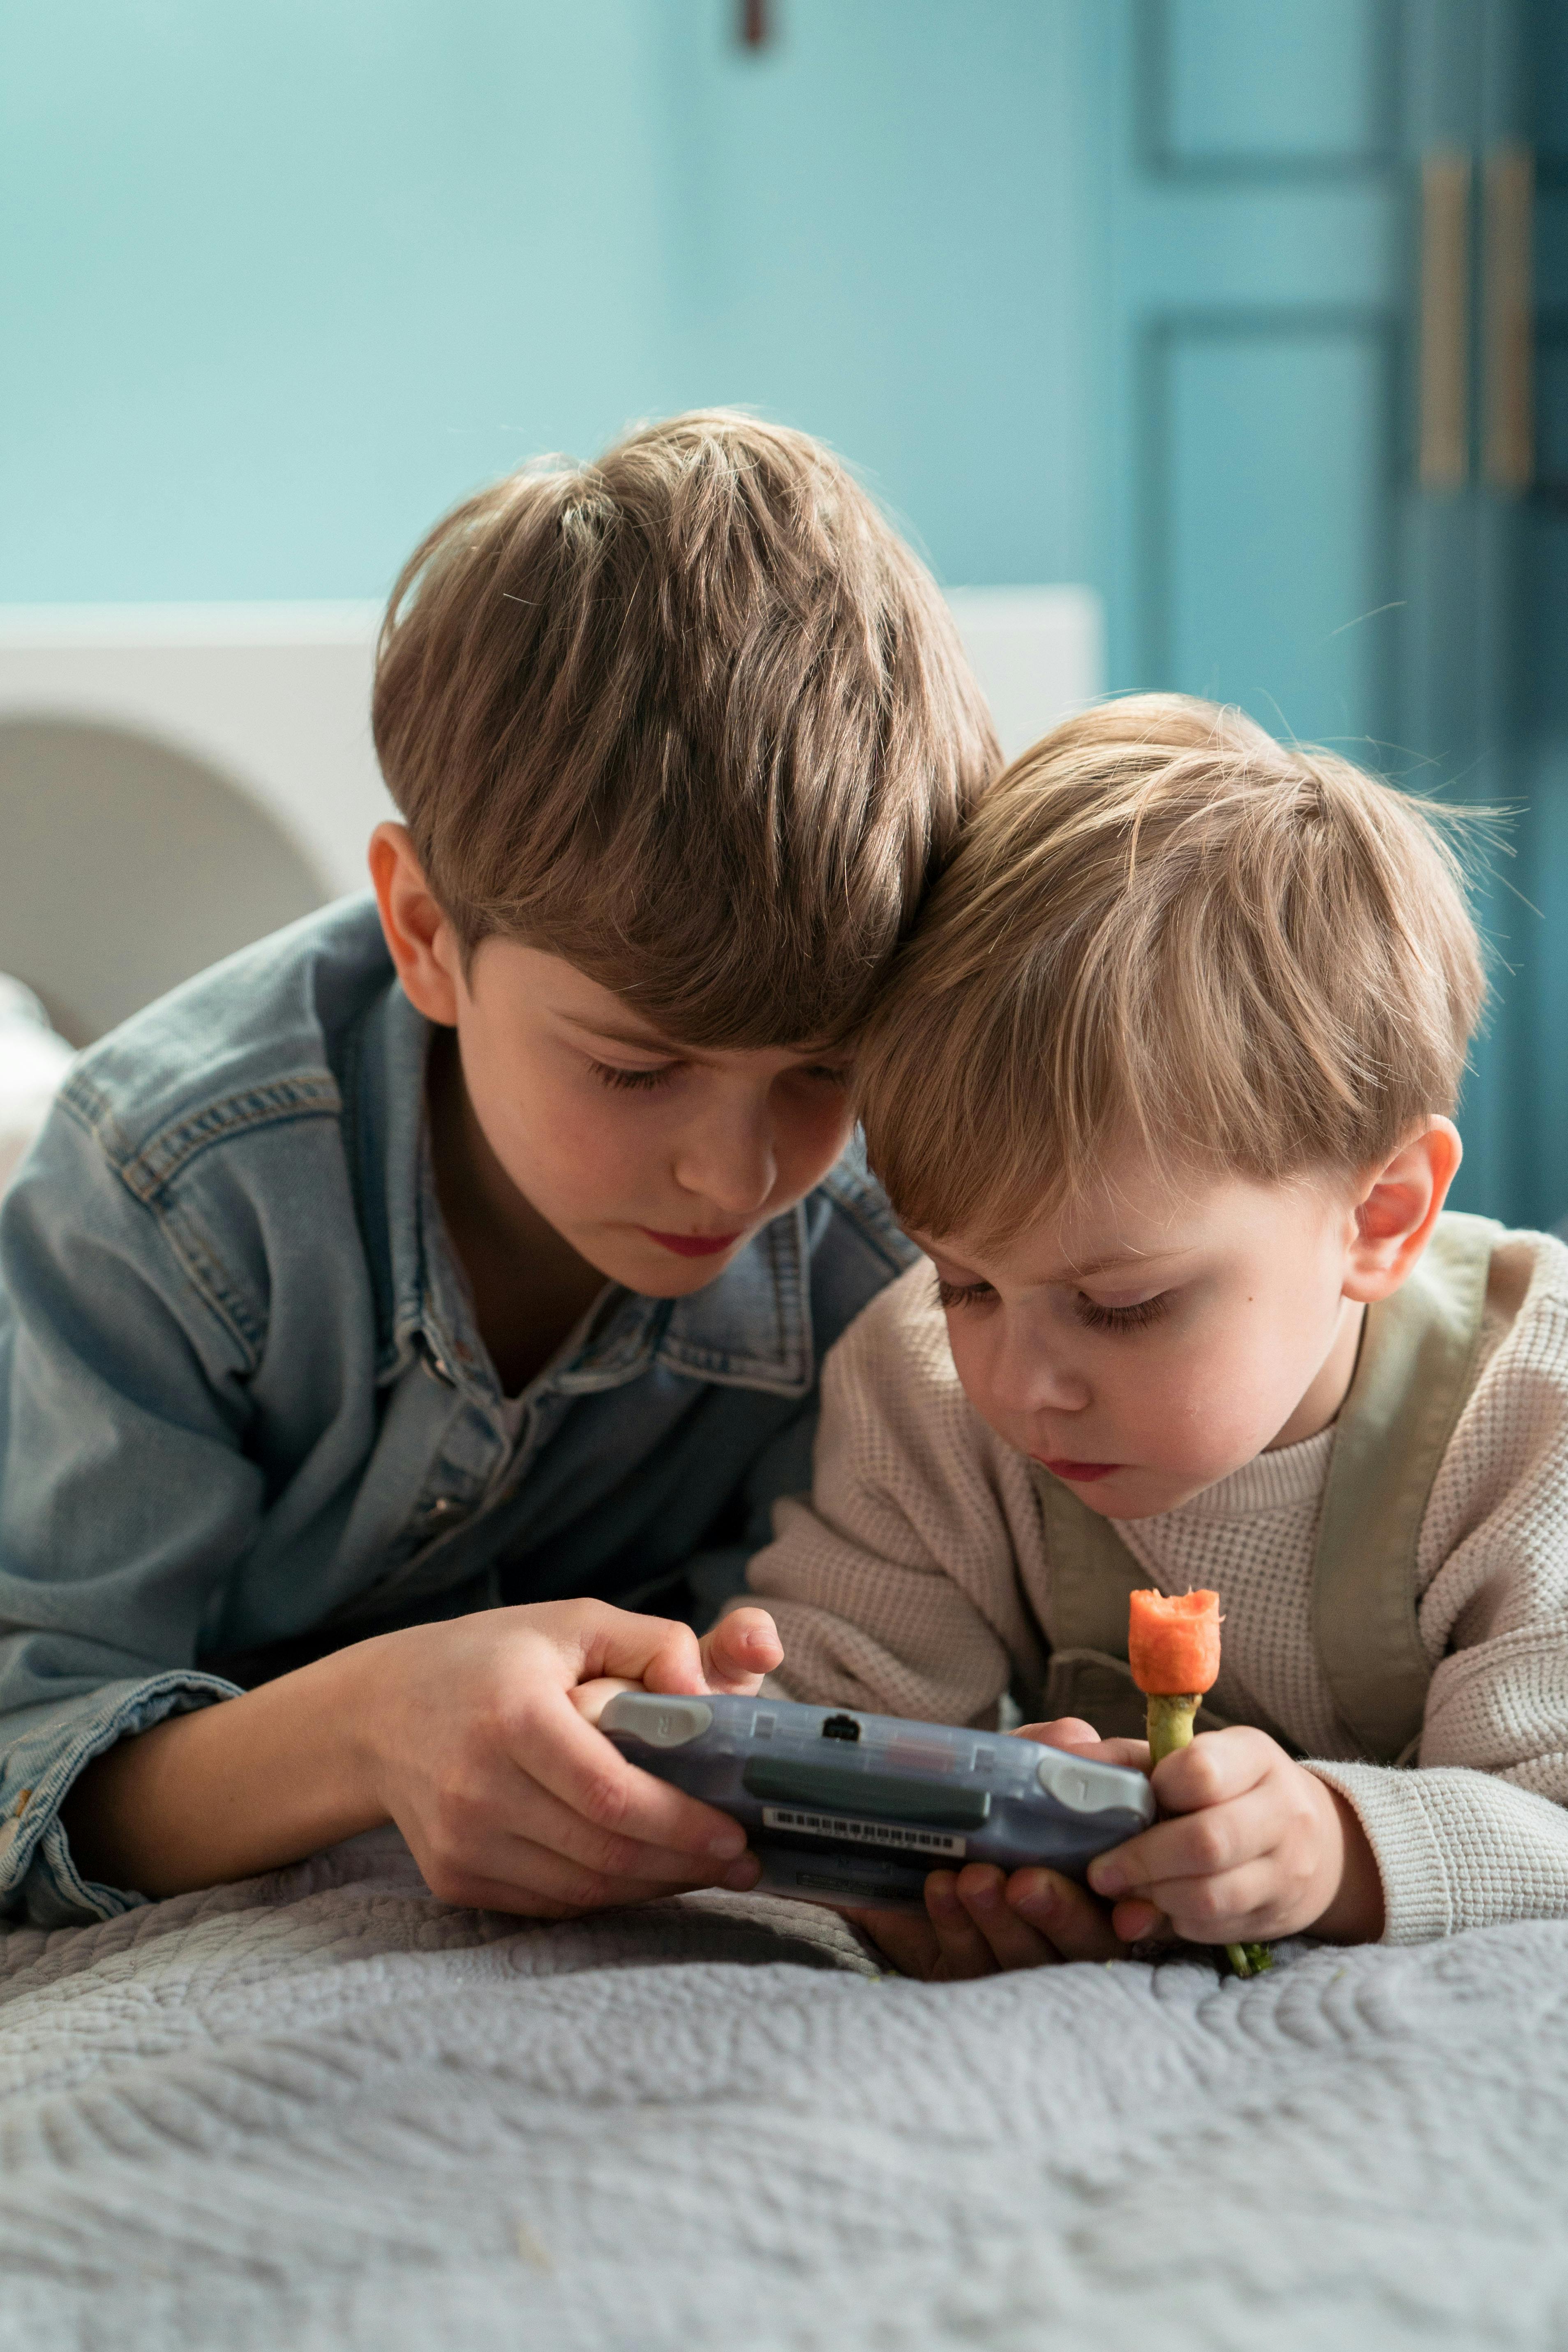 Dos niños jugando juntos | Fuente: Pexels